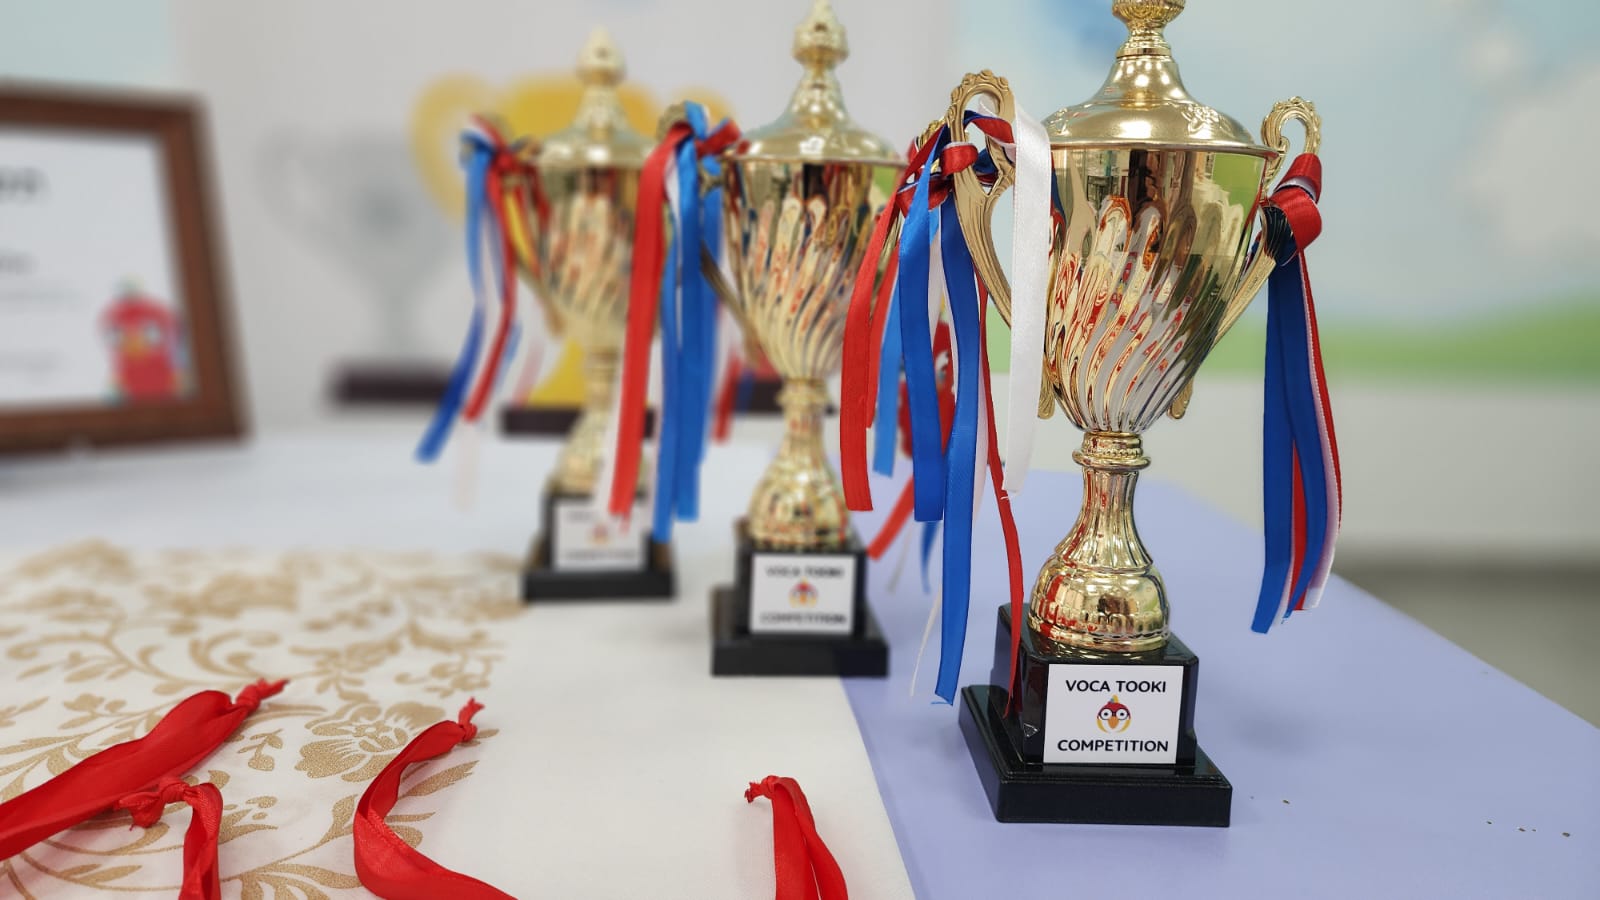 المستقبل تحتفل وتُكرّم المتأهلين والفائزين في مسابقة فوكا توكي